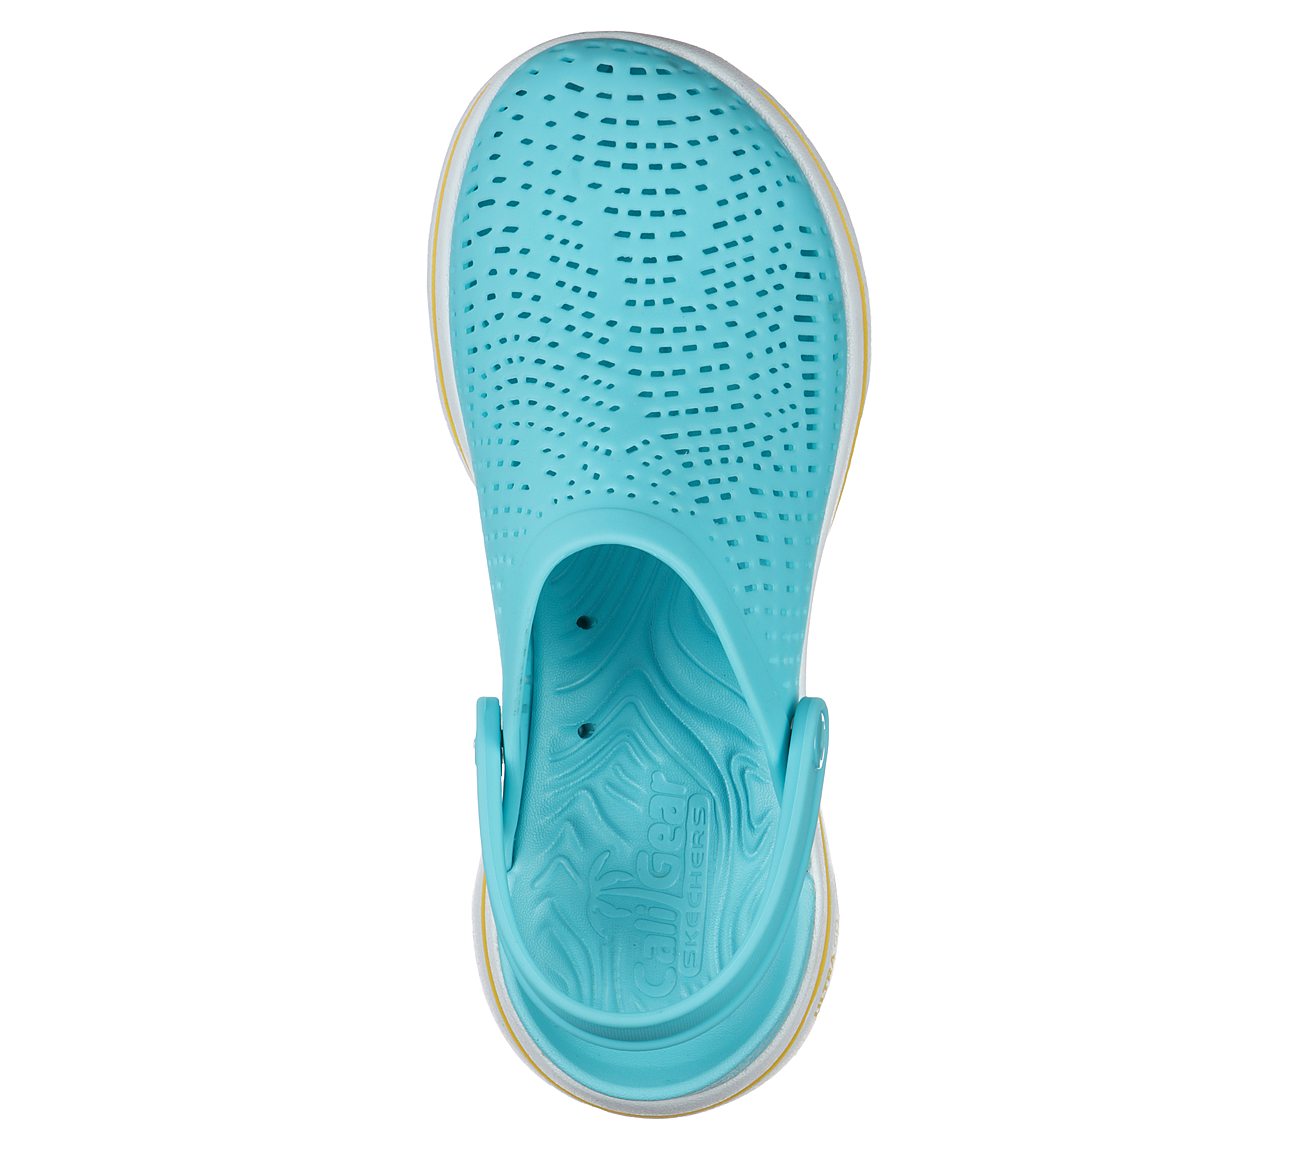 GO WALK 5 FOAMIES - ASTONISHE, BLUE Footwear Top View